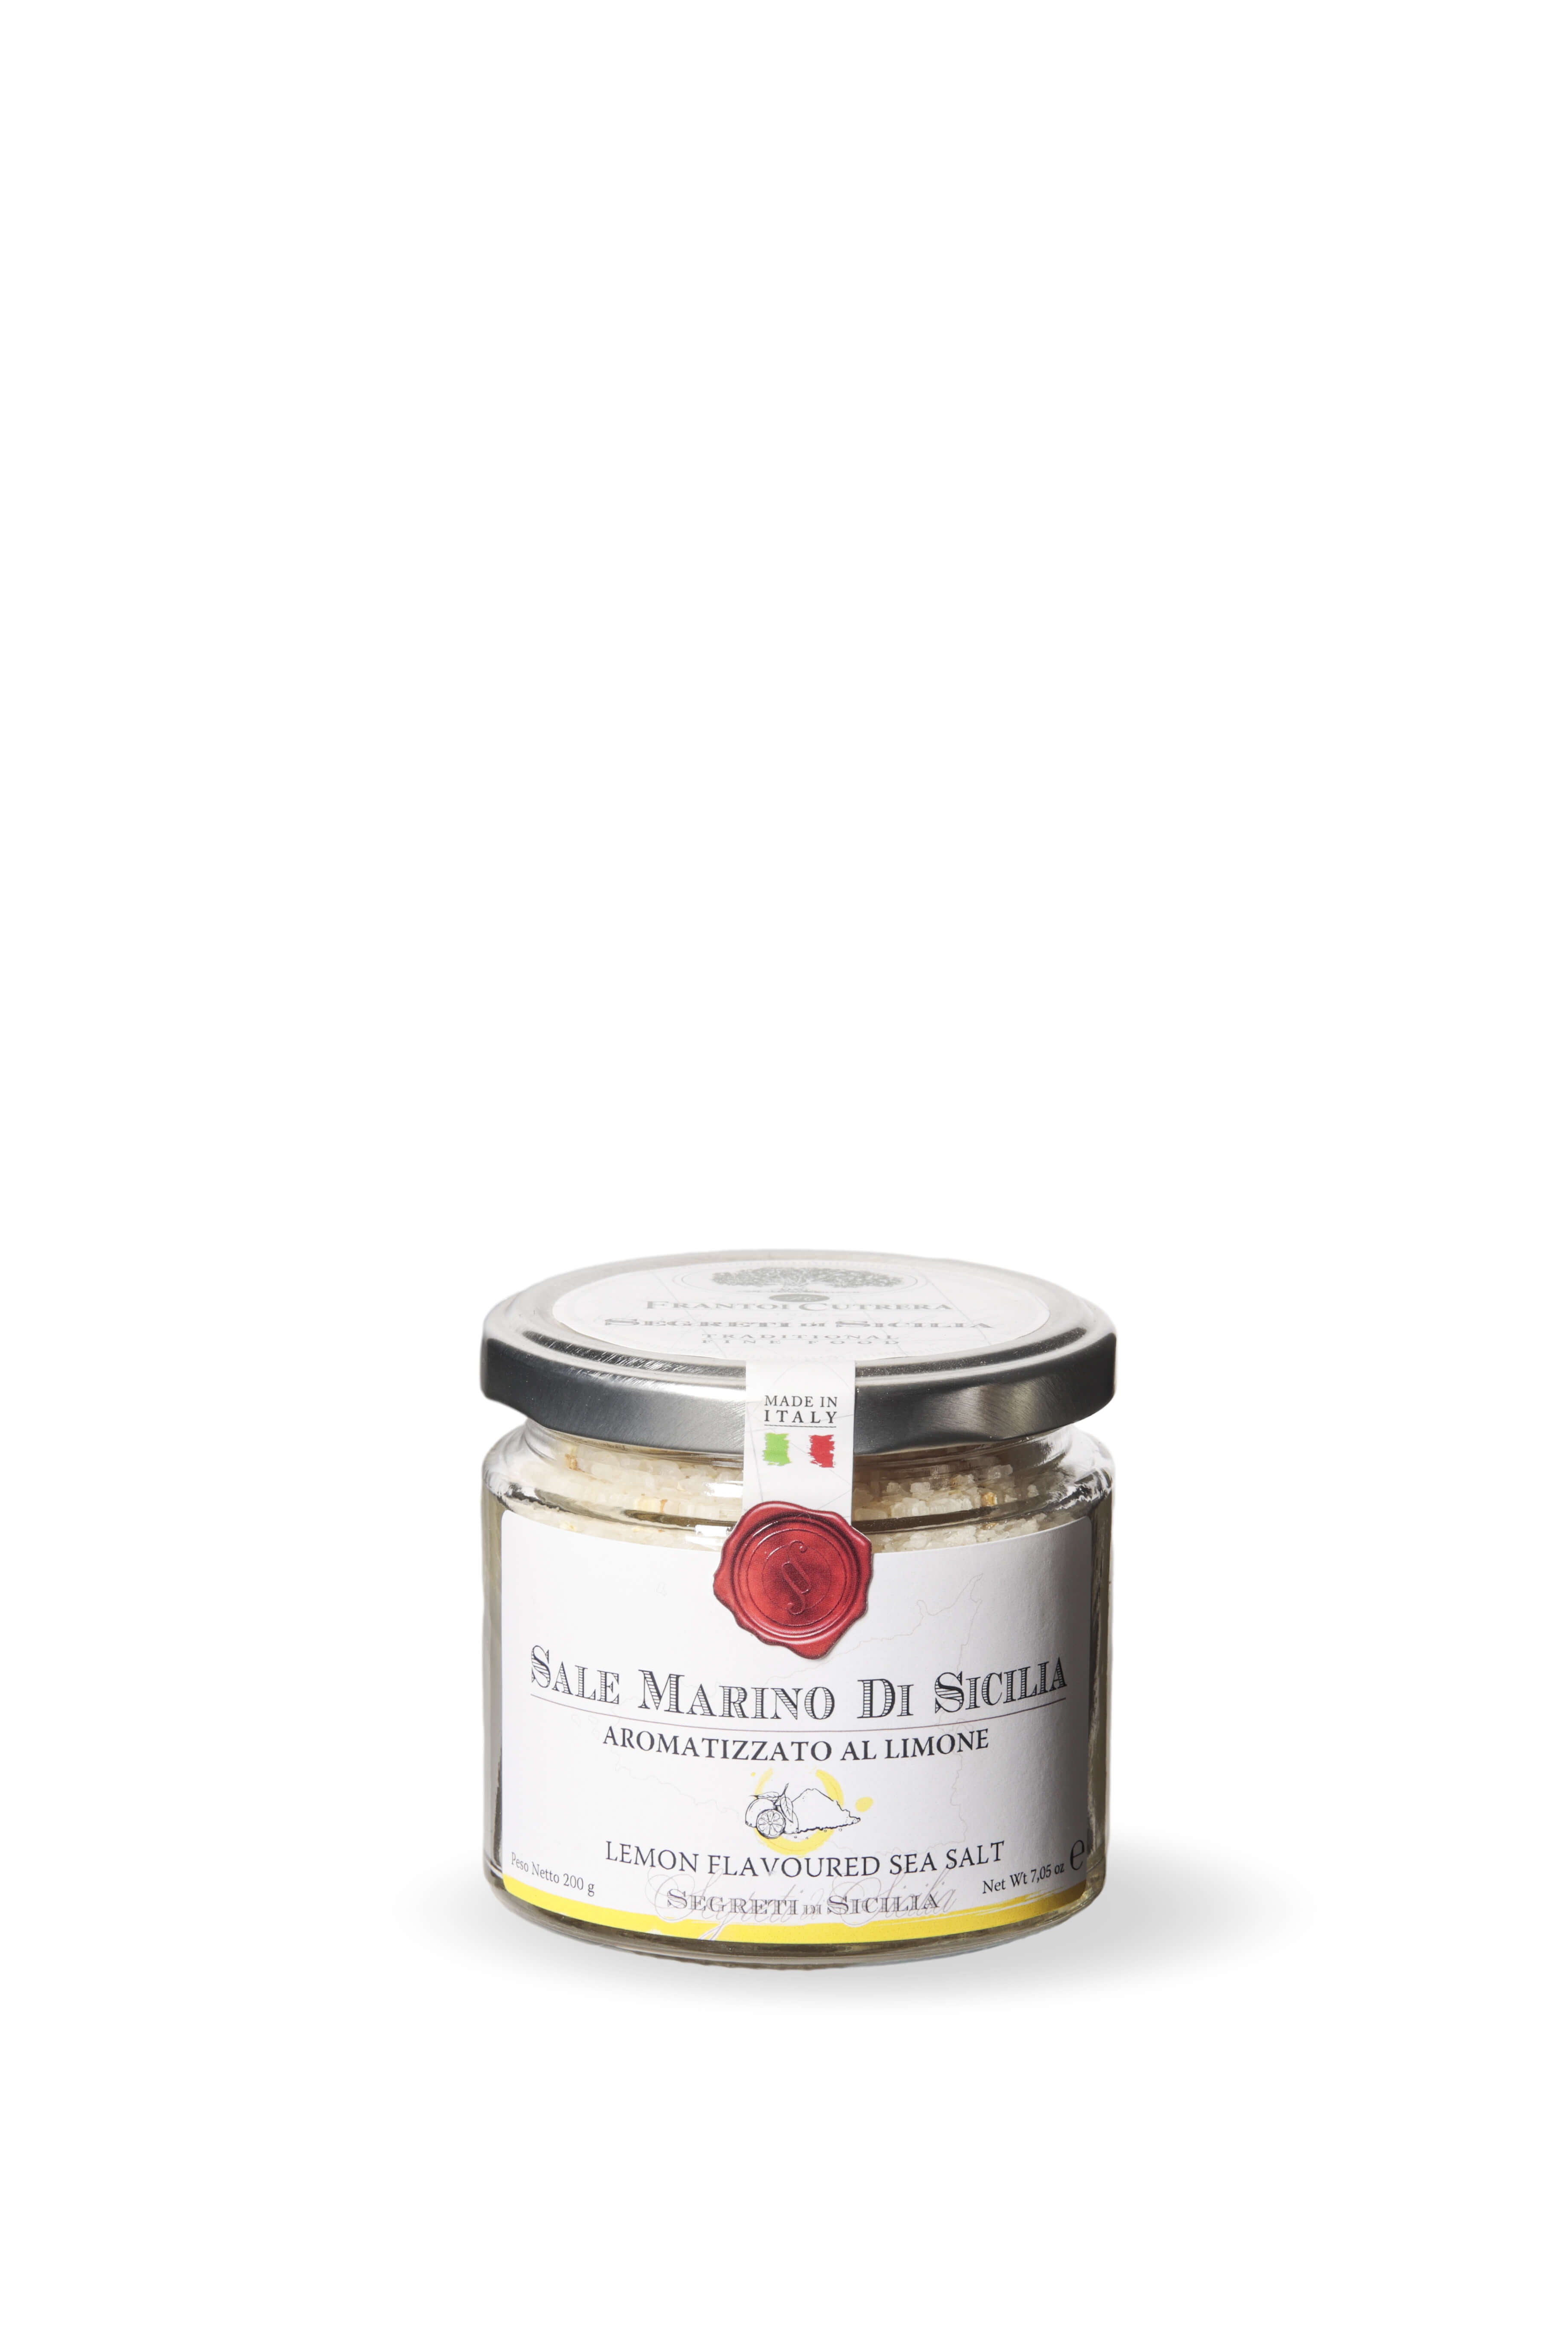 Sicilian Sea Salt Flavored with Lemon